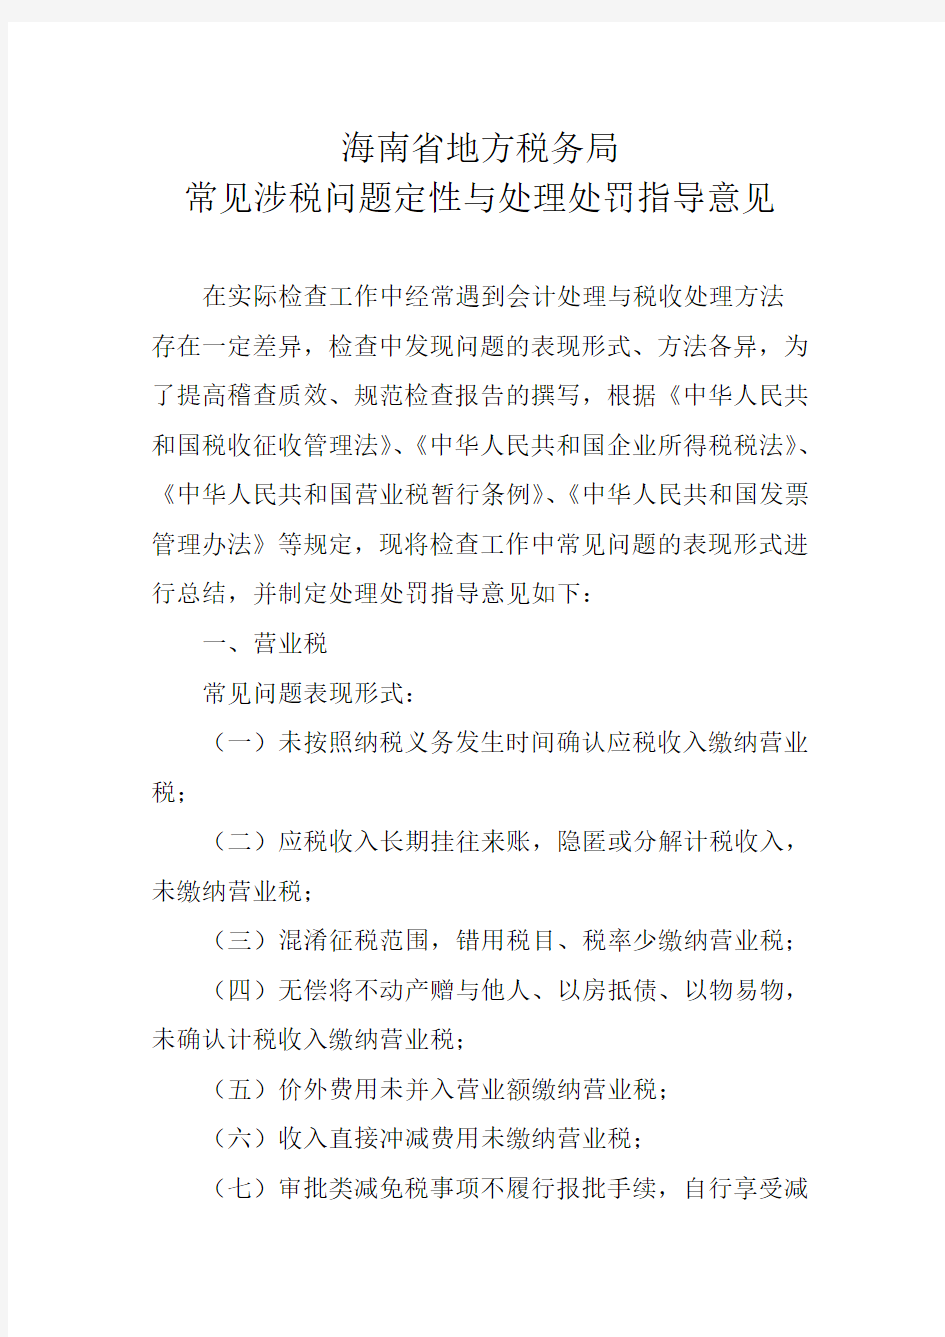 海南省地方税务局常见涉税问题定性与处理处罚指导意见